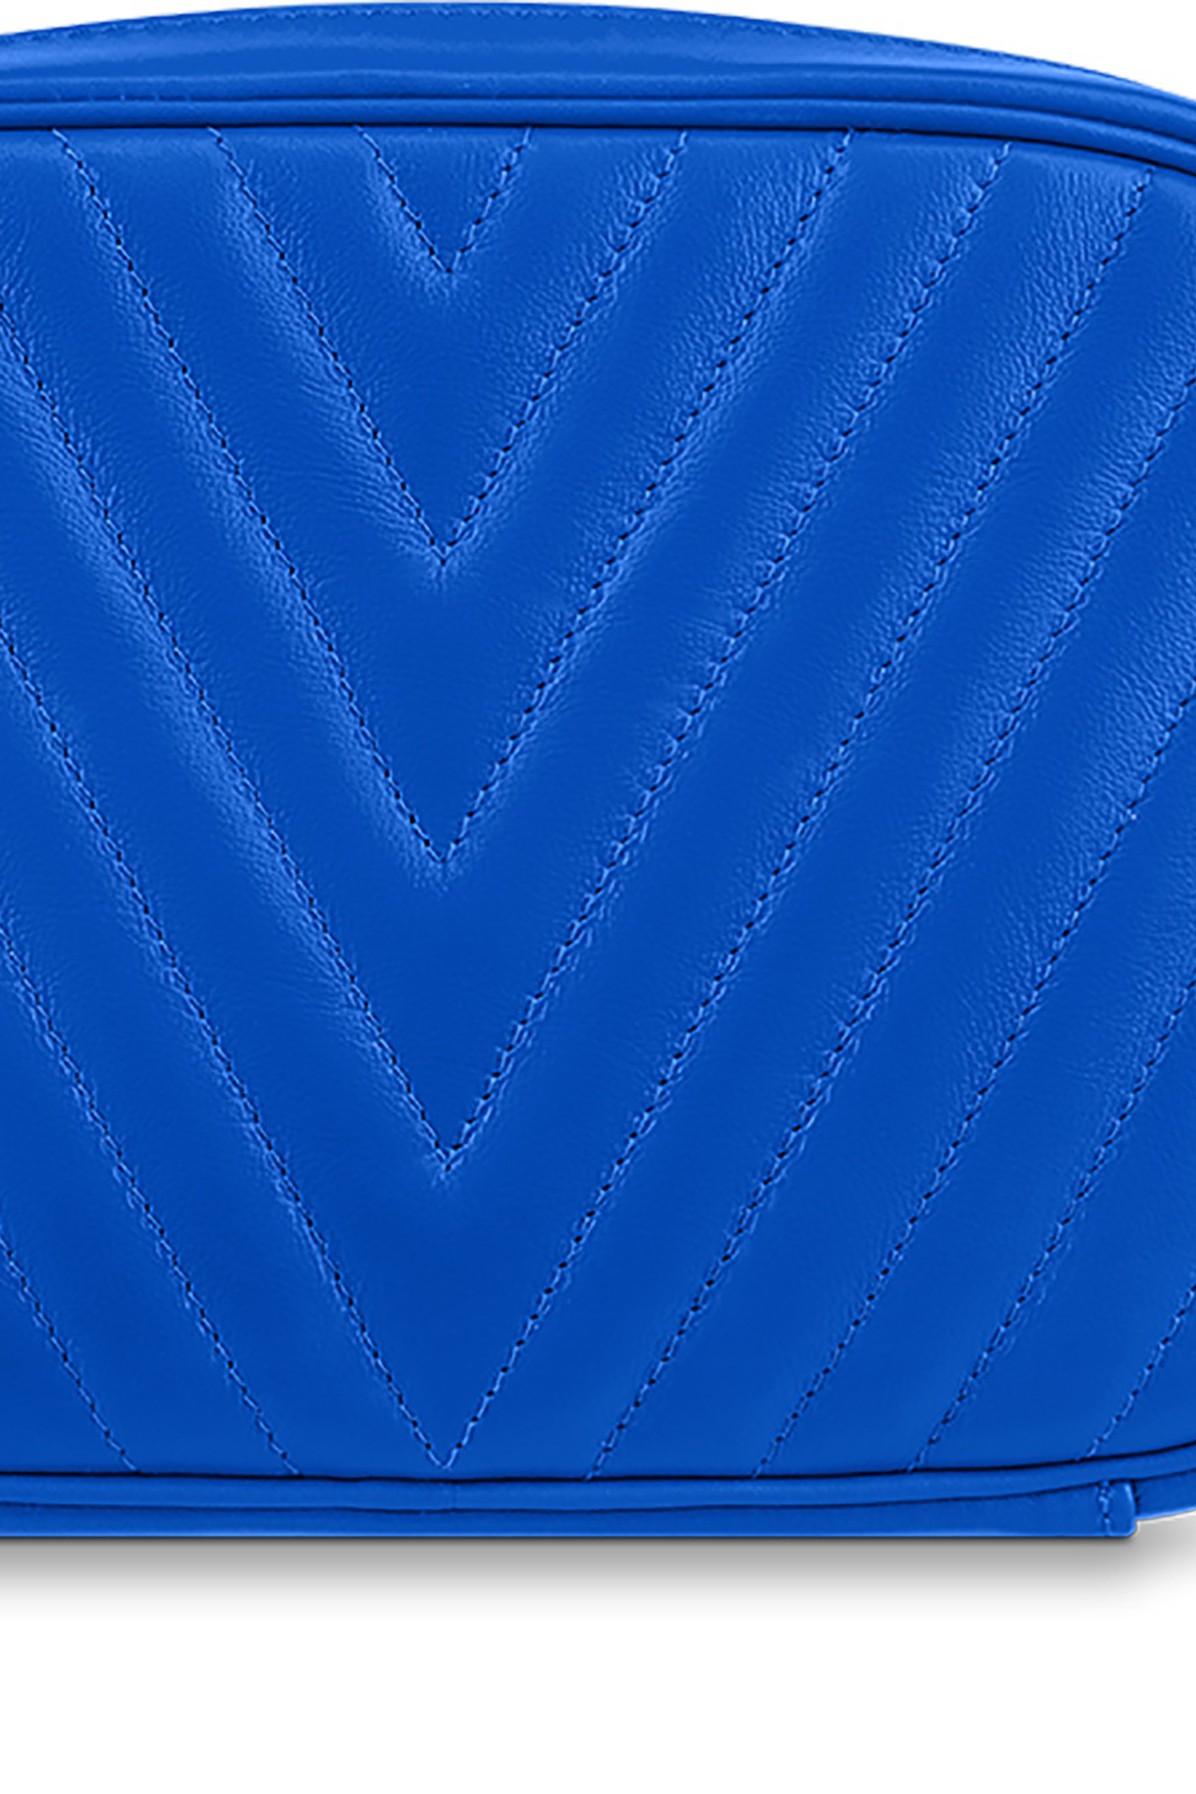 LOUIS VUITTON Calfskin New Wave Camera Bag Bleu Neon 1255457